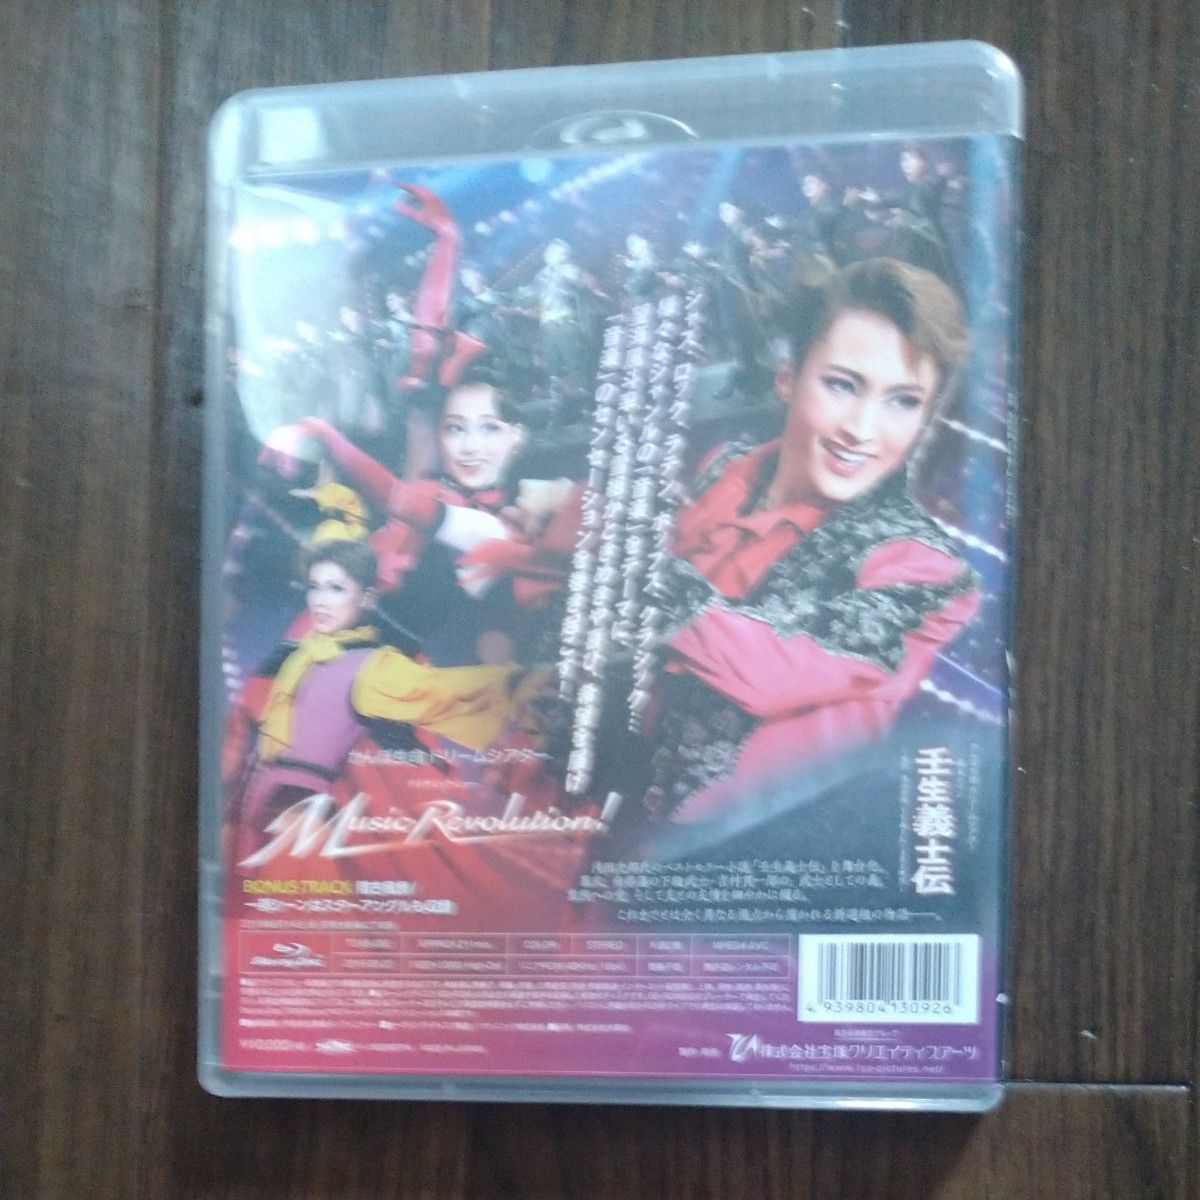 宝塚雪組「壬生義士伝」「 Music Revilutin!」 Blu-ray